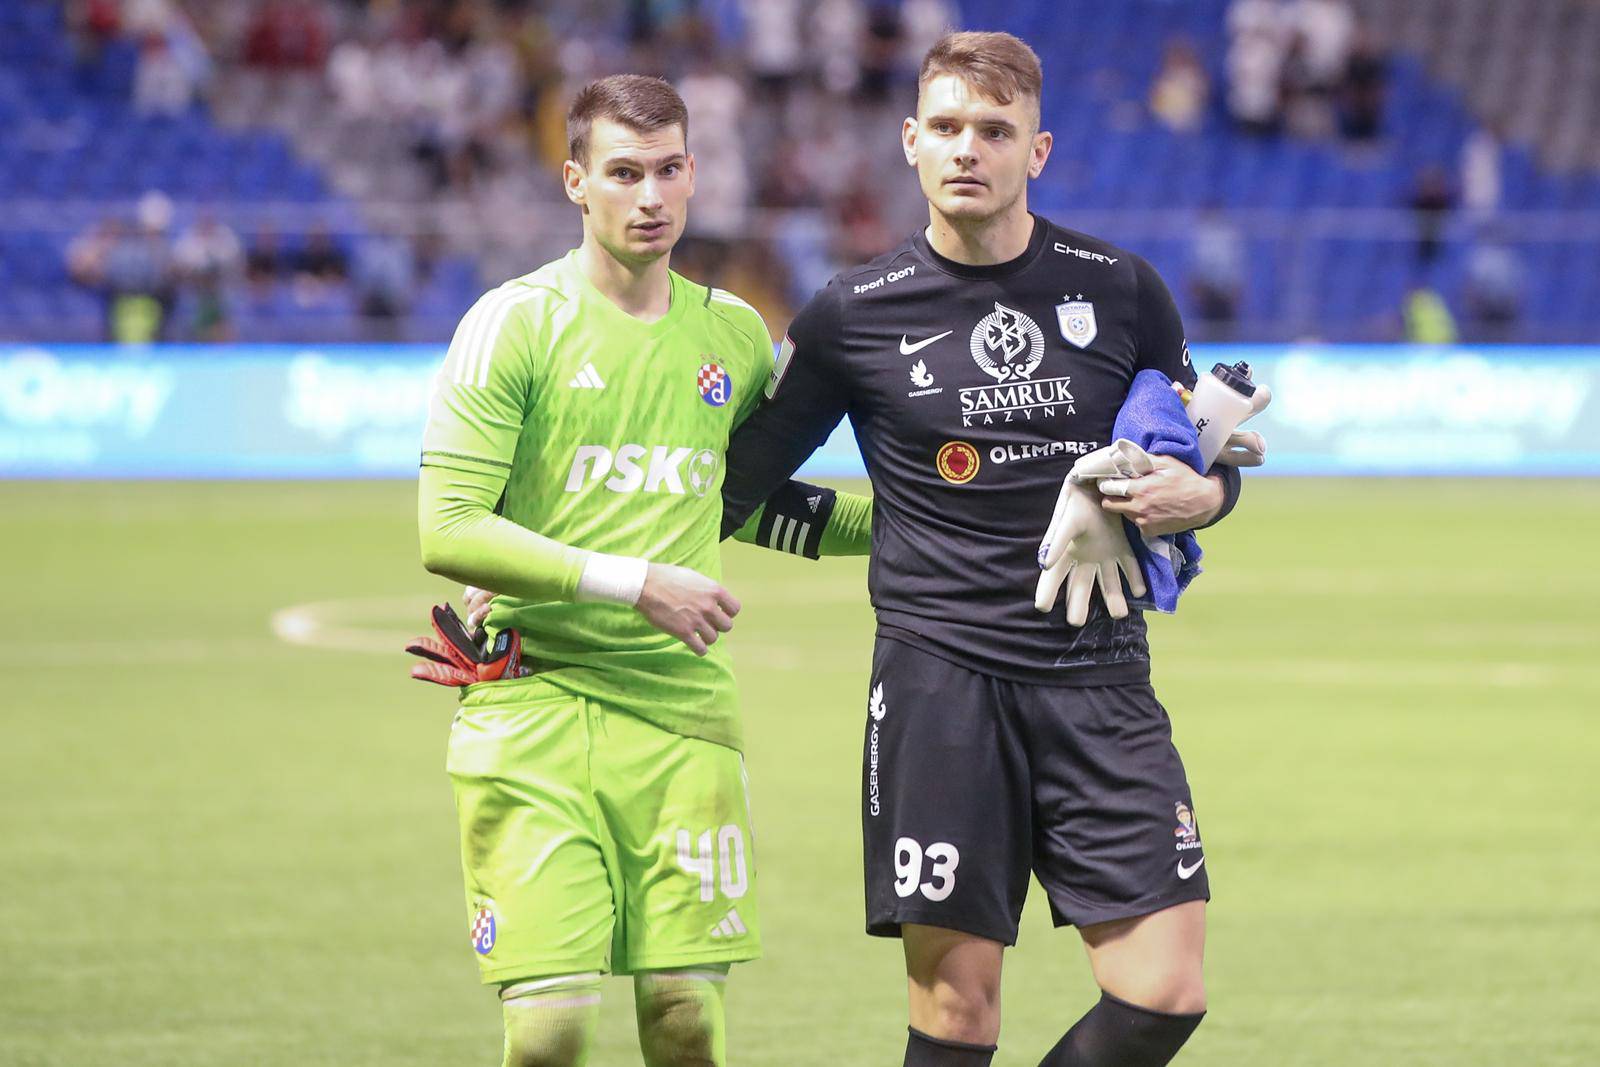 Igrači GNK Dinamo pozravljaju navijače nakon pobjede nad Astanom